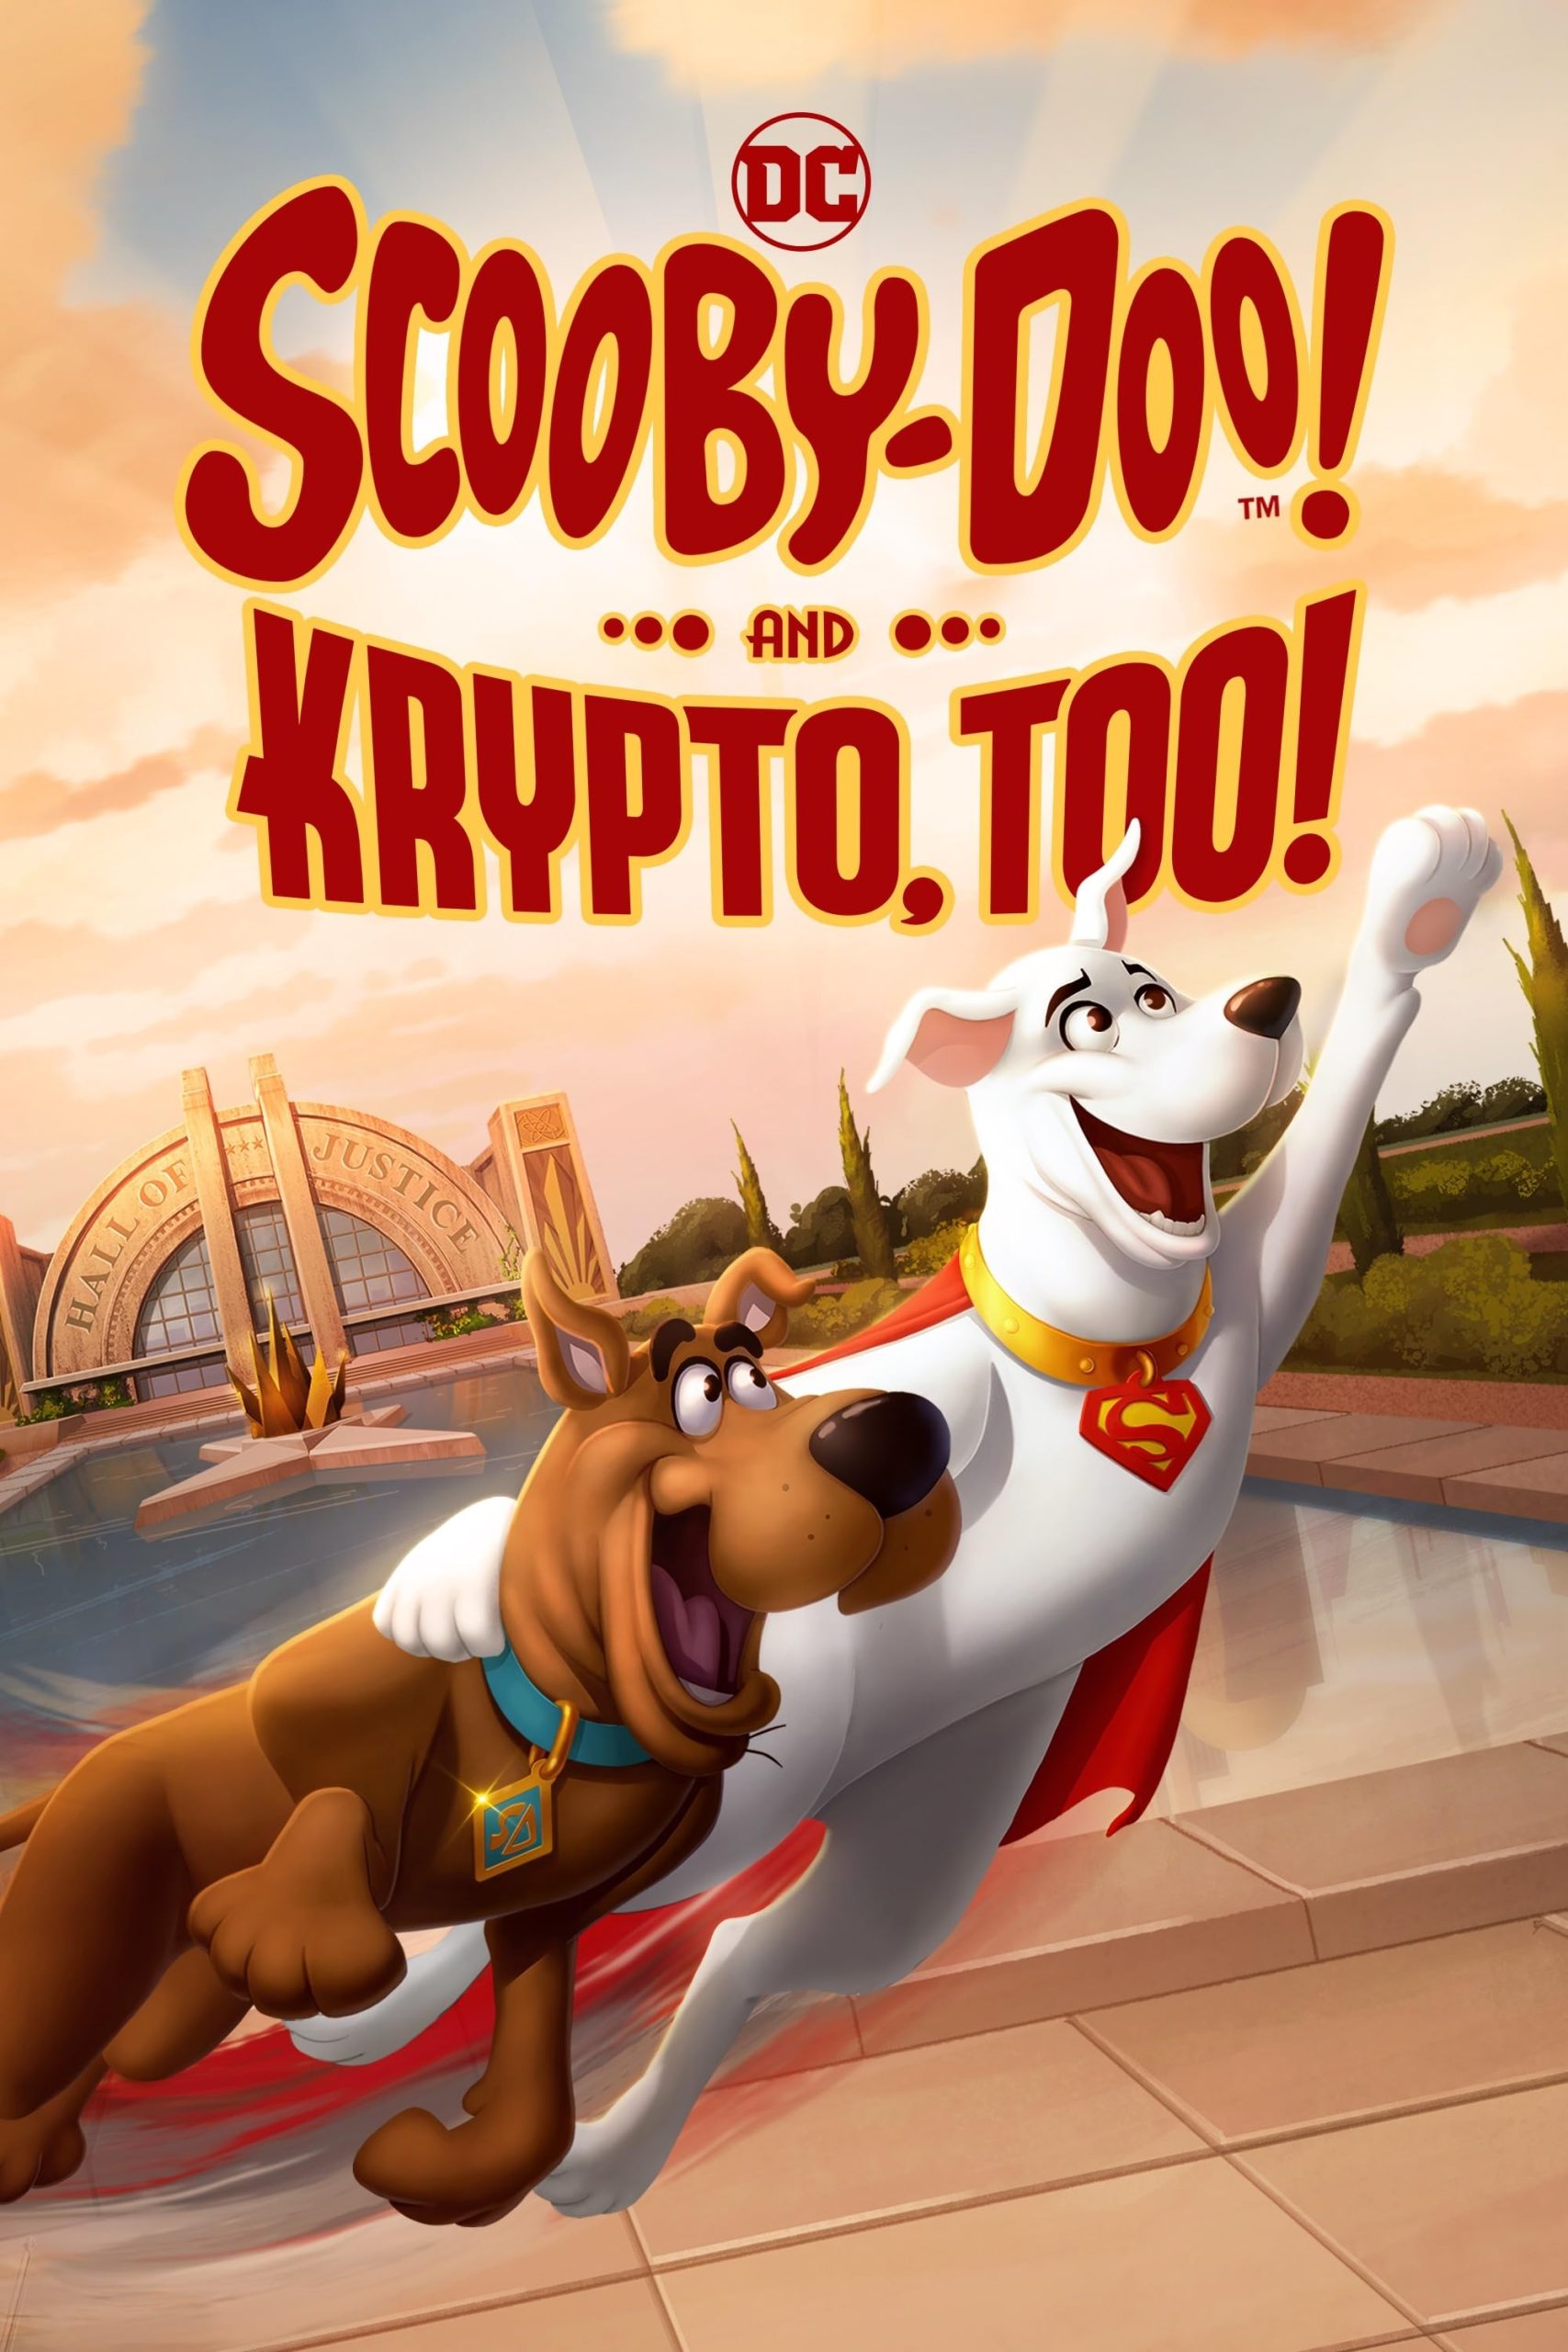 انیمیشن Scooby-Doo! and Krypto Too! 2023 | اسکو بی دوو! و کریپتو نیز!